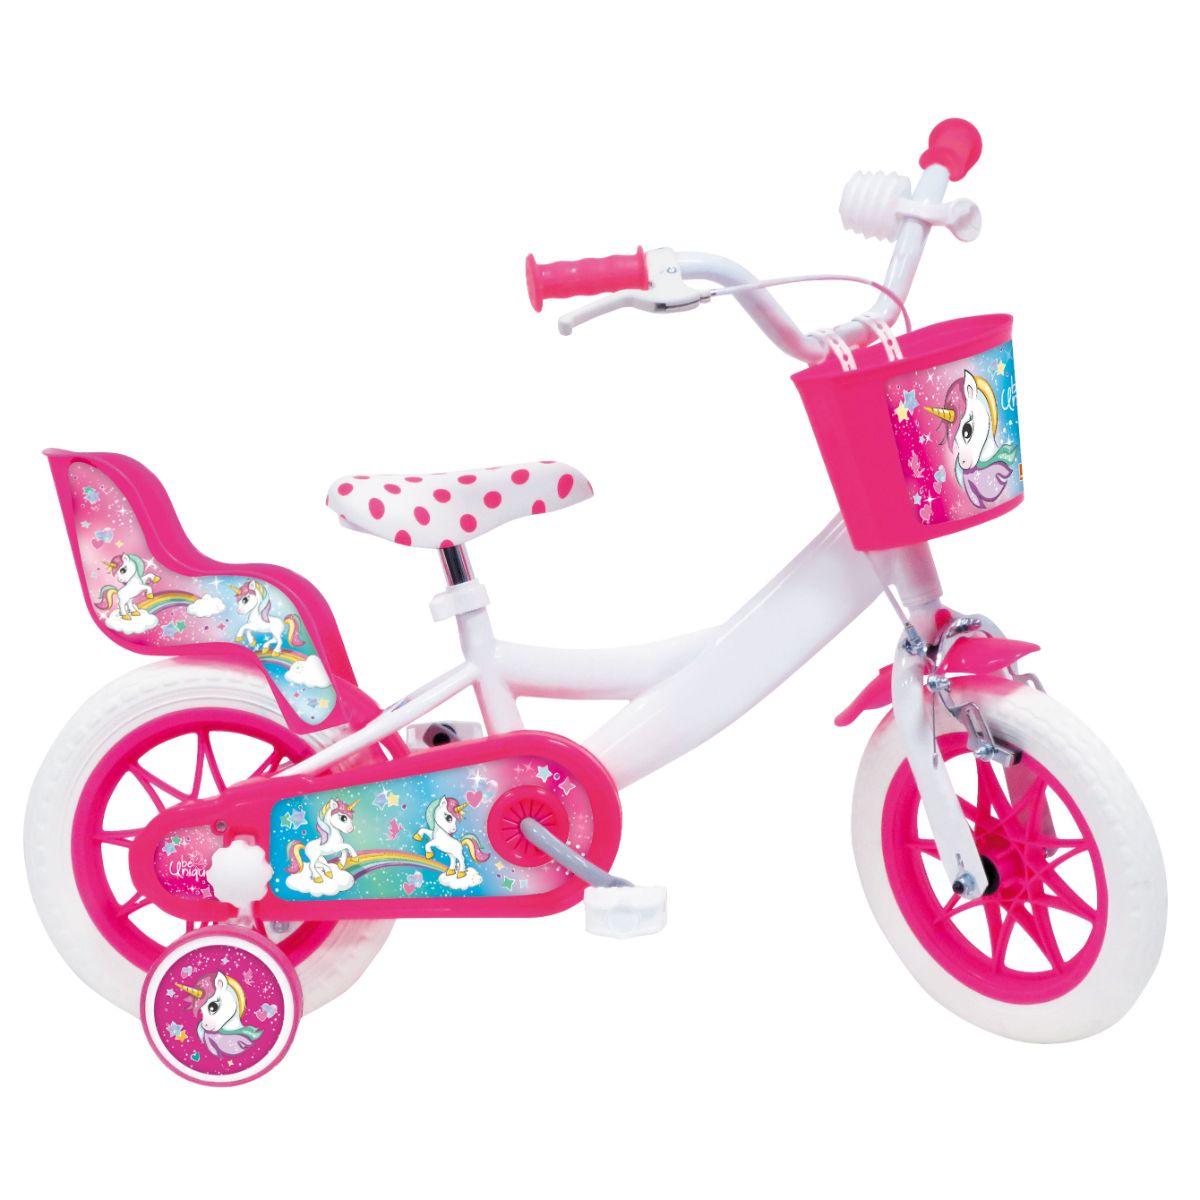 Jucarii exterior - Bicicleta pentru copii cu roti ajutatoare 12'' UNICORN DELUXE, hectarul.ro